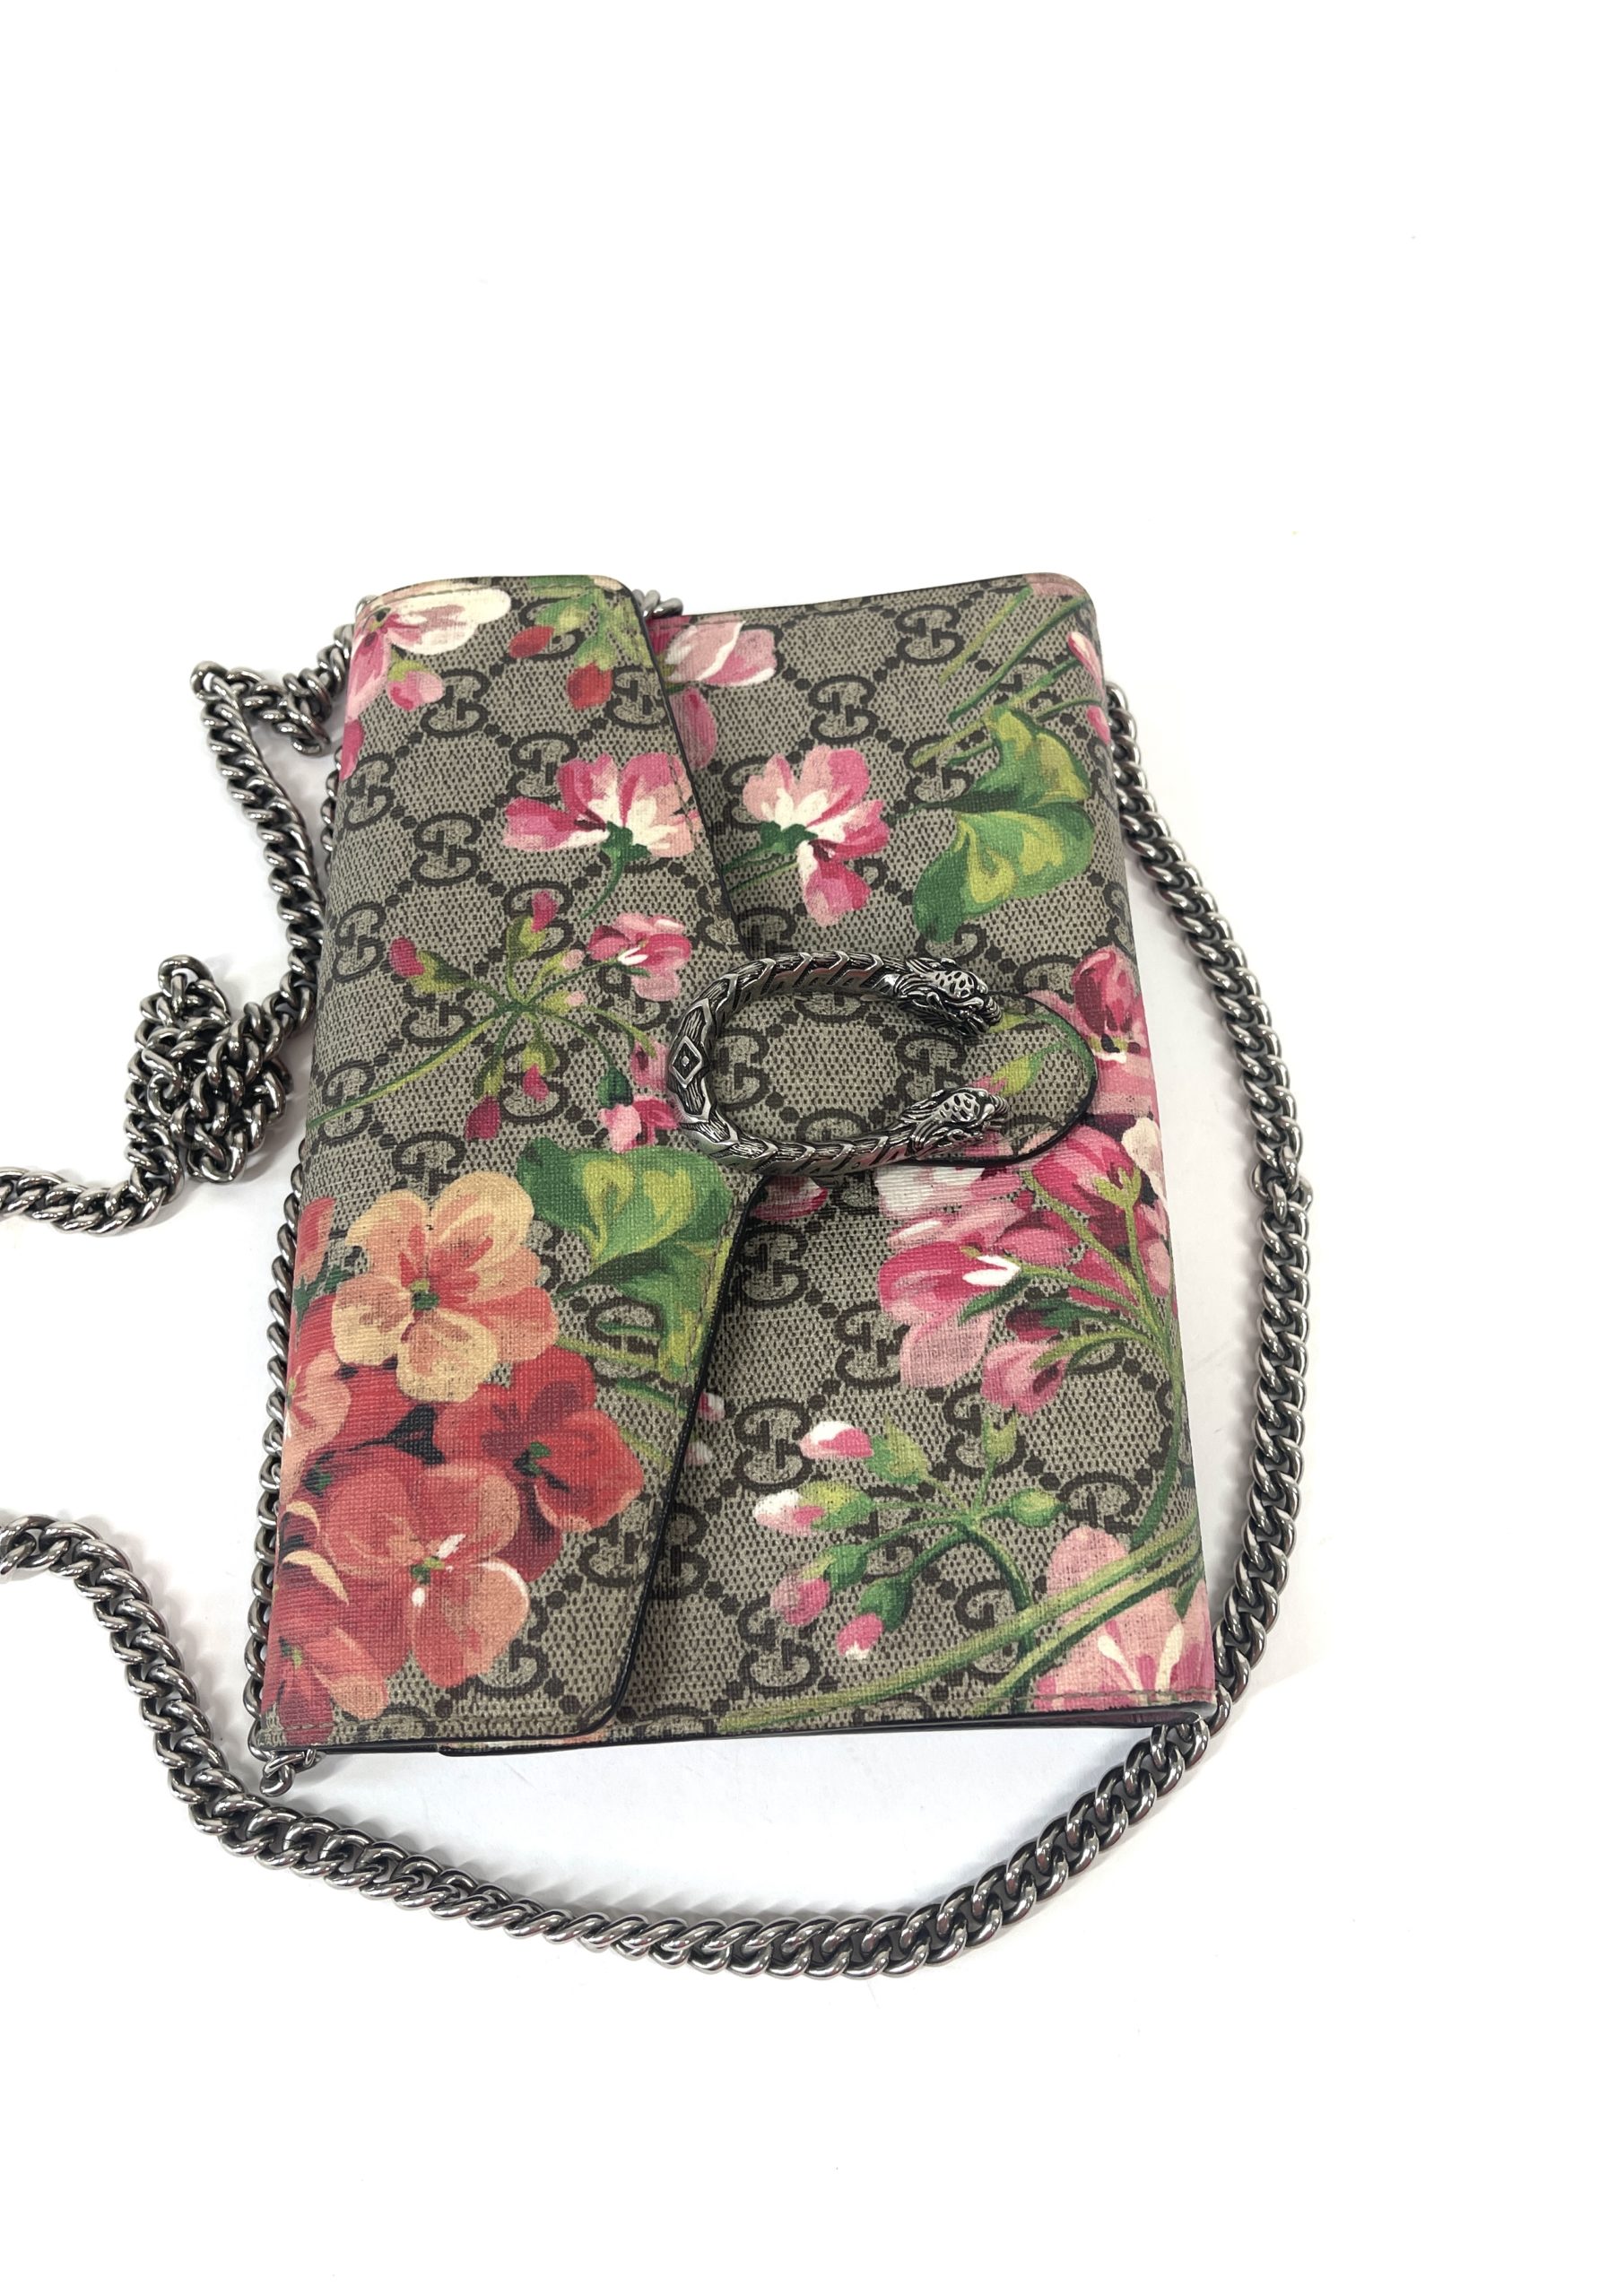 Gucci Dionysus Blooms GG Supreme Shoulder Bag